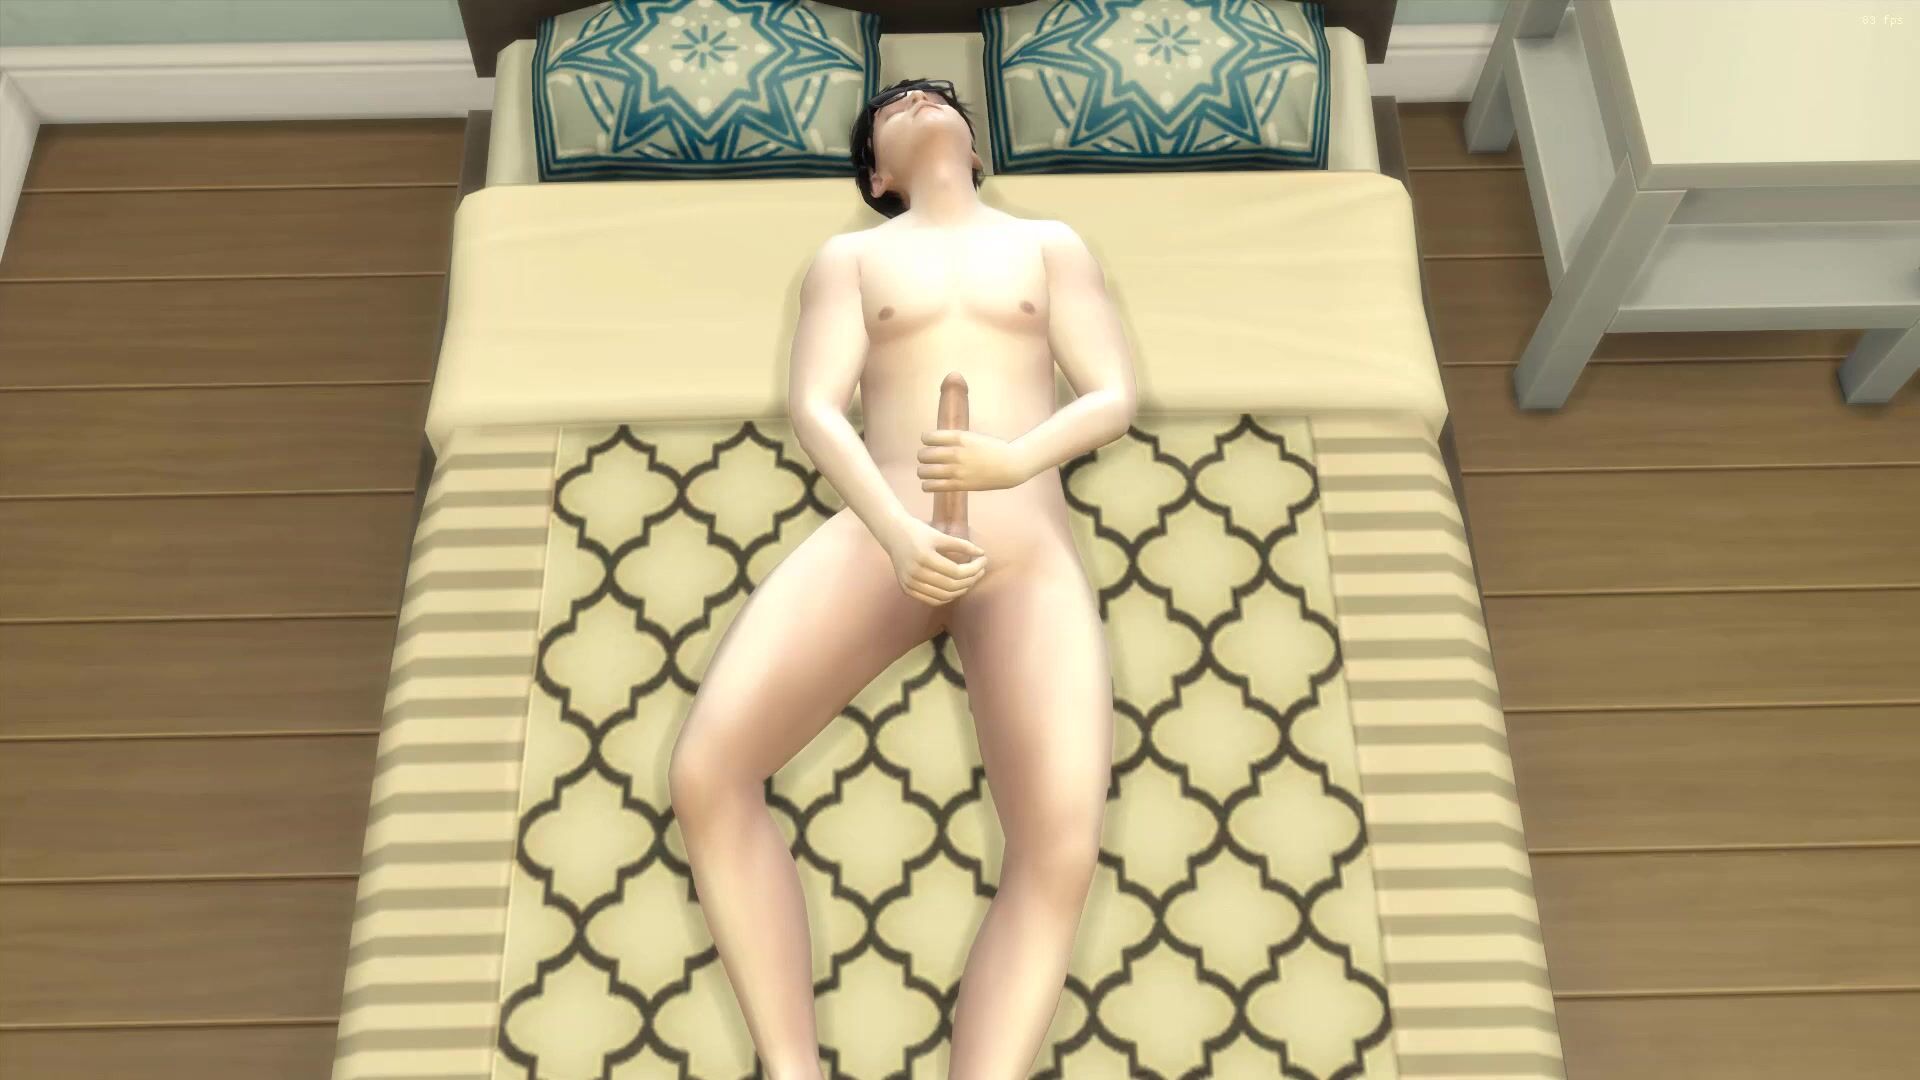 Mamma giapponese trova il figlio nudo nel suo letto dopo essersi masturbato ed essendo vergine ha deciso di aiutarlo per evitare che inciampi così spesso foto